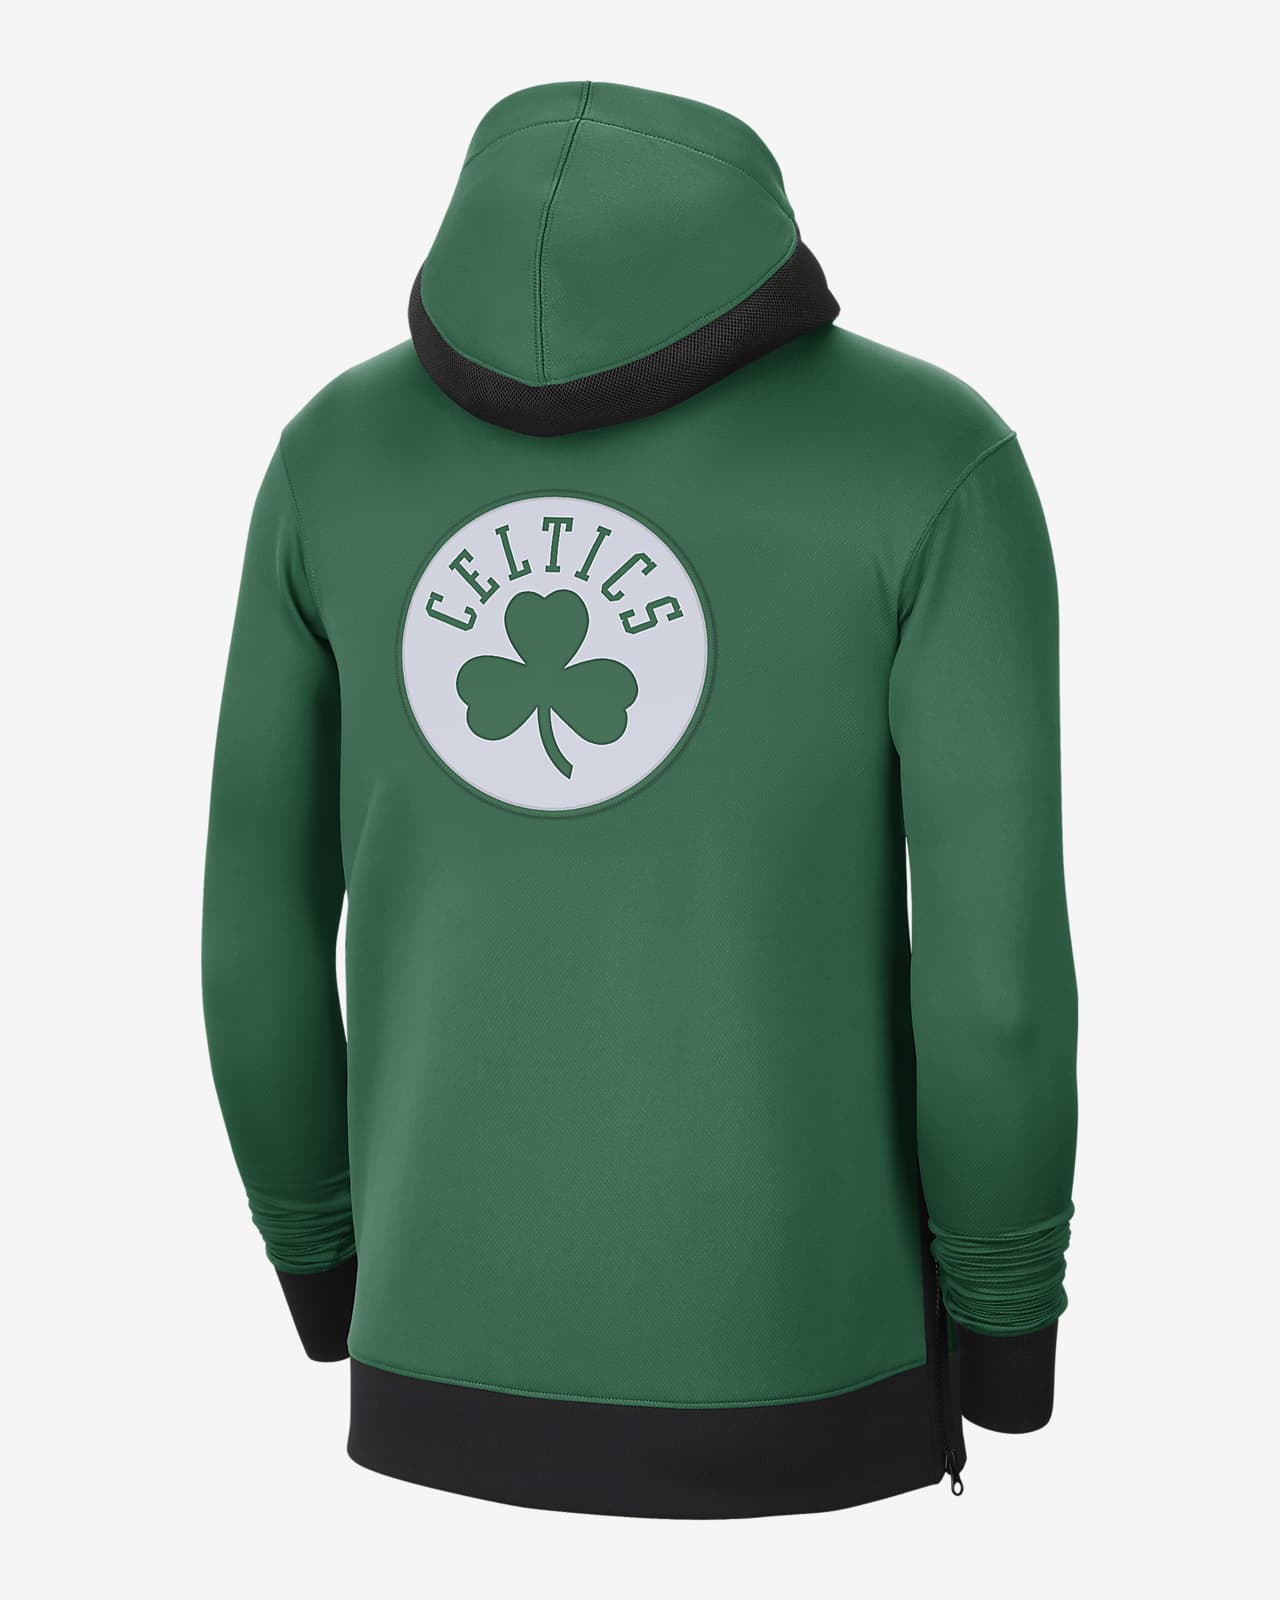 celtics showtime hoodie